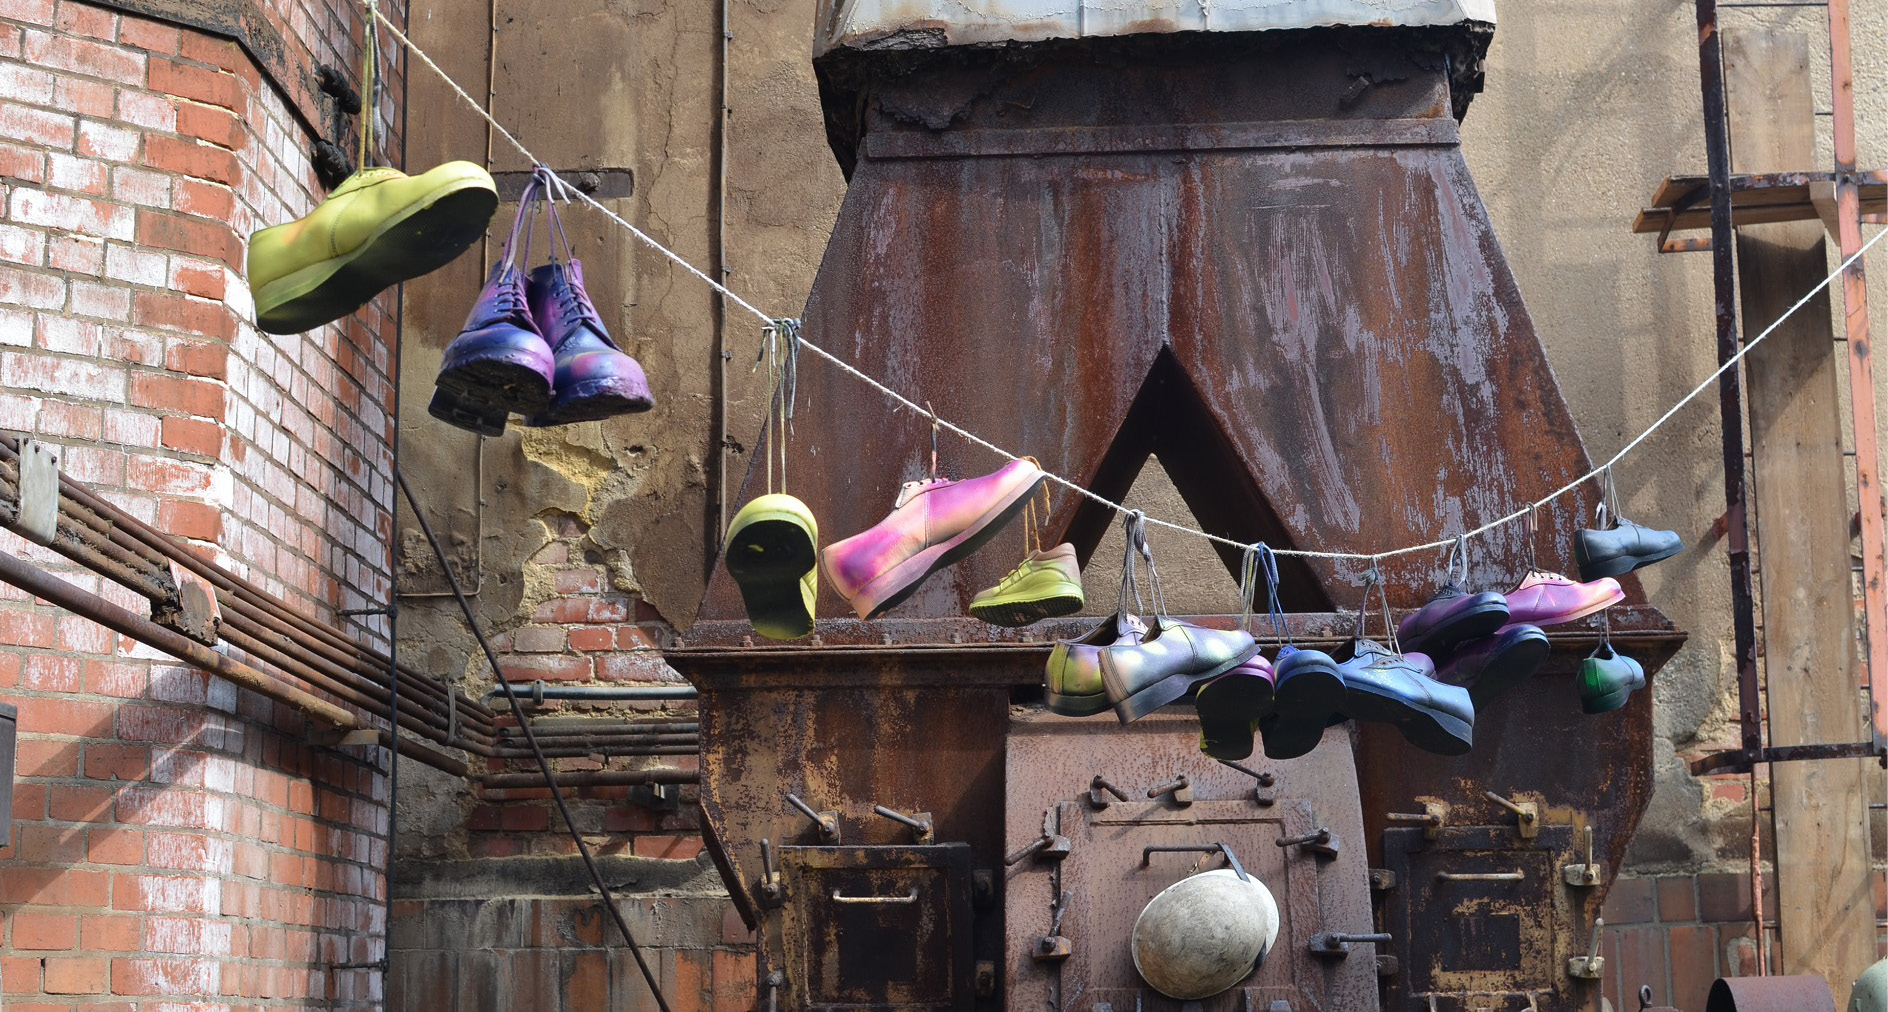 Auf der Abbildung sieht man Teile eines alten Industriestandortes. Vor den rostigen Maschinen sind mehrere bunt lackierte Schuhe nebeneinander an einer Leine aufgehängt.  